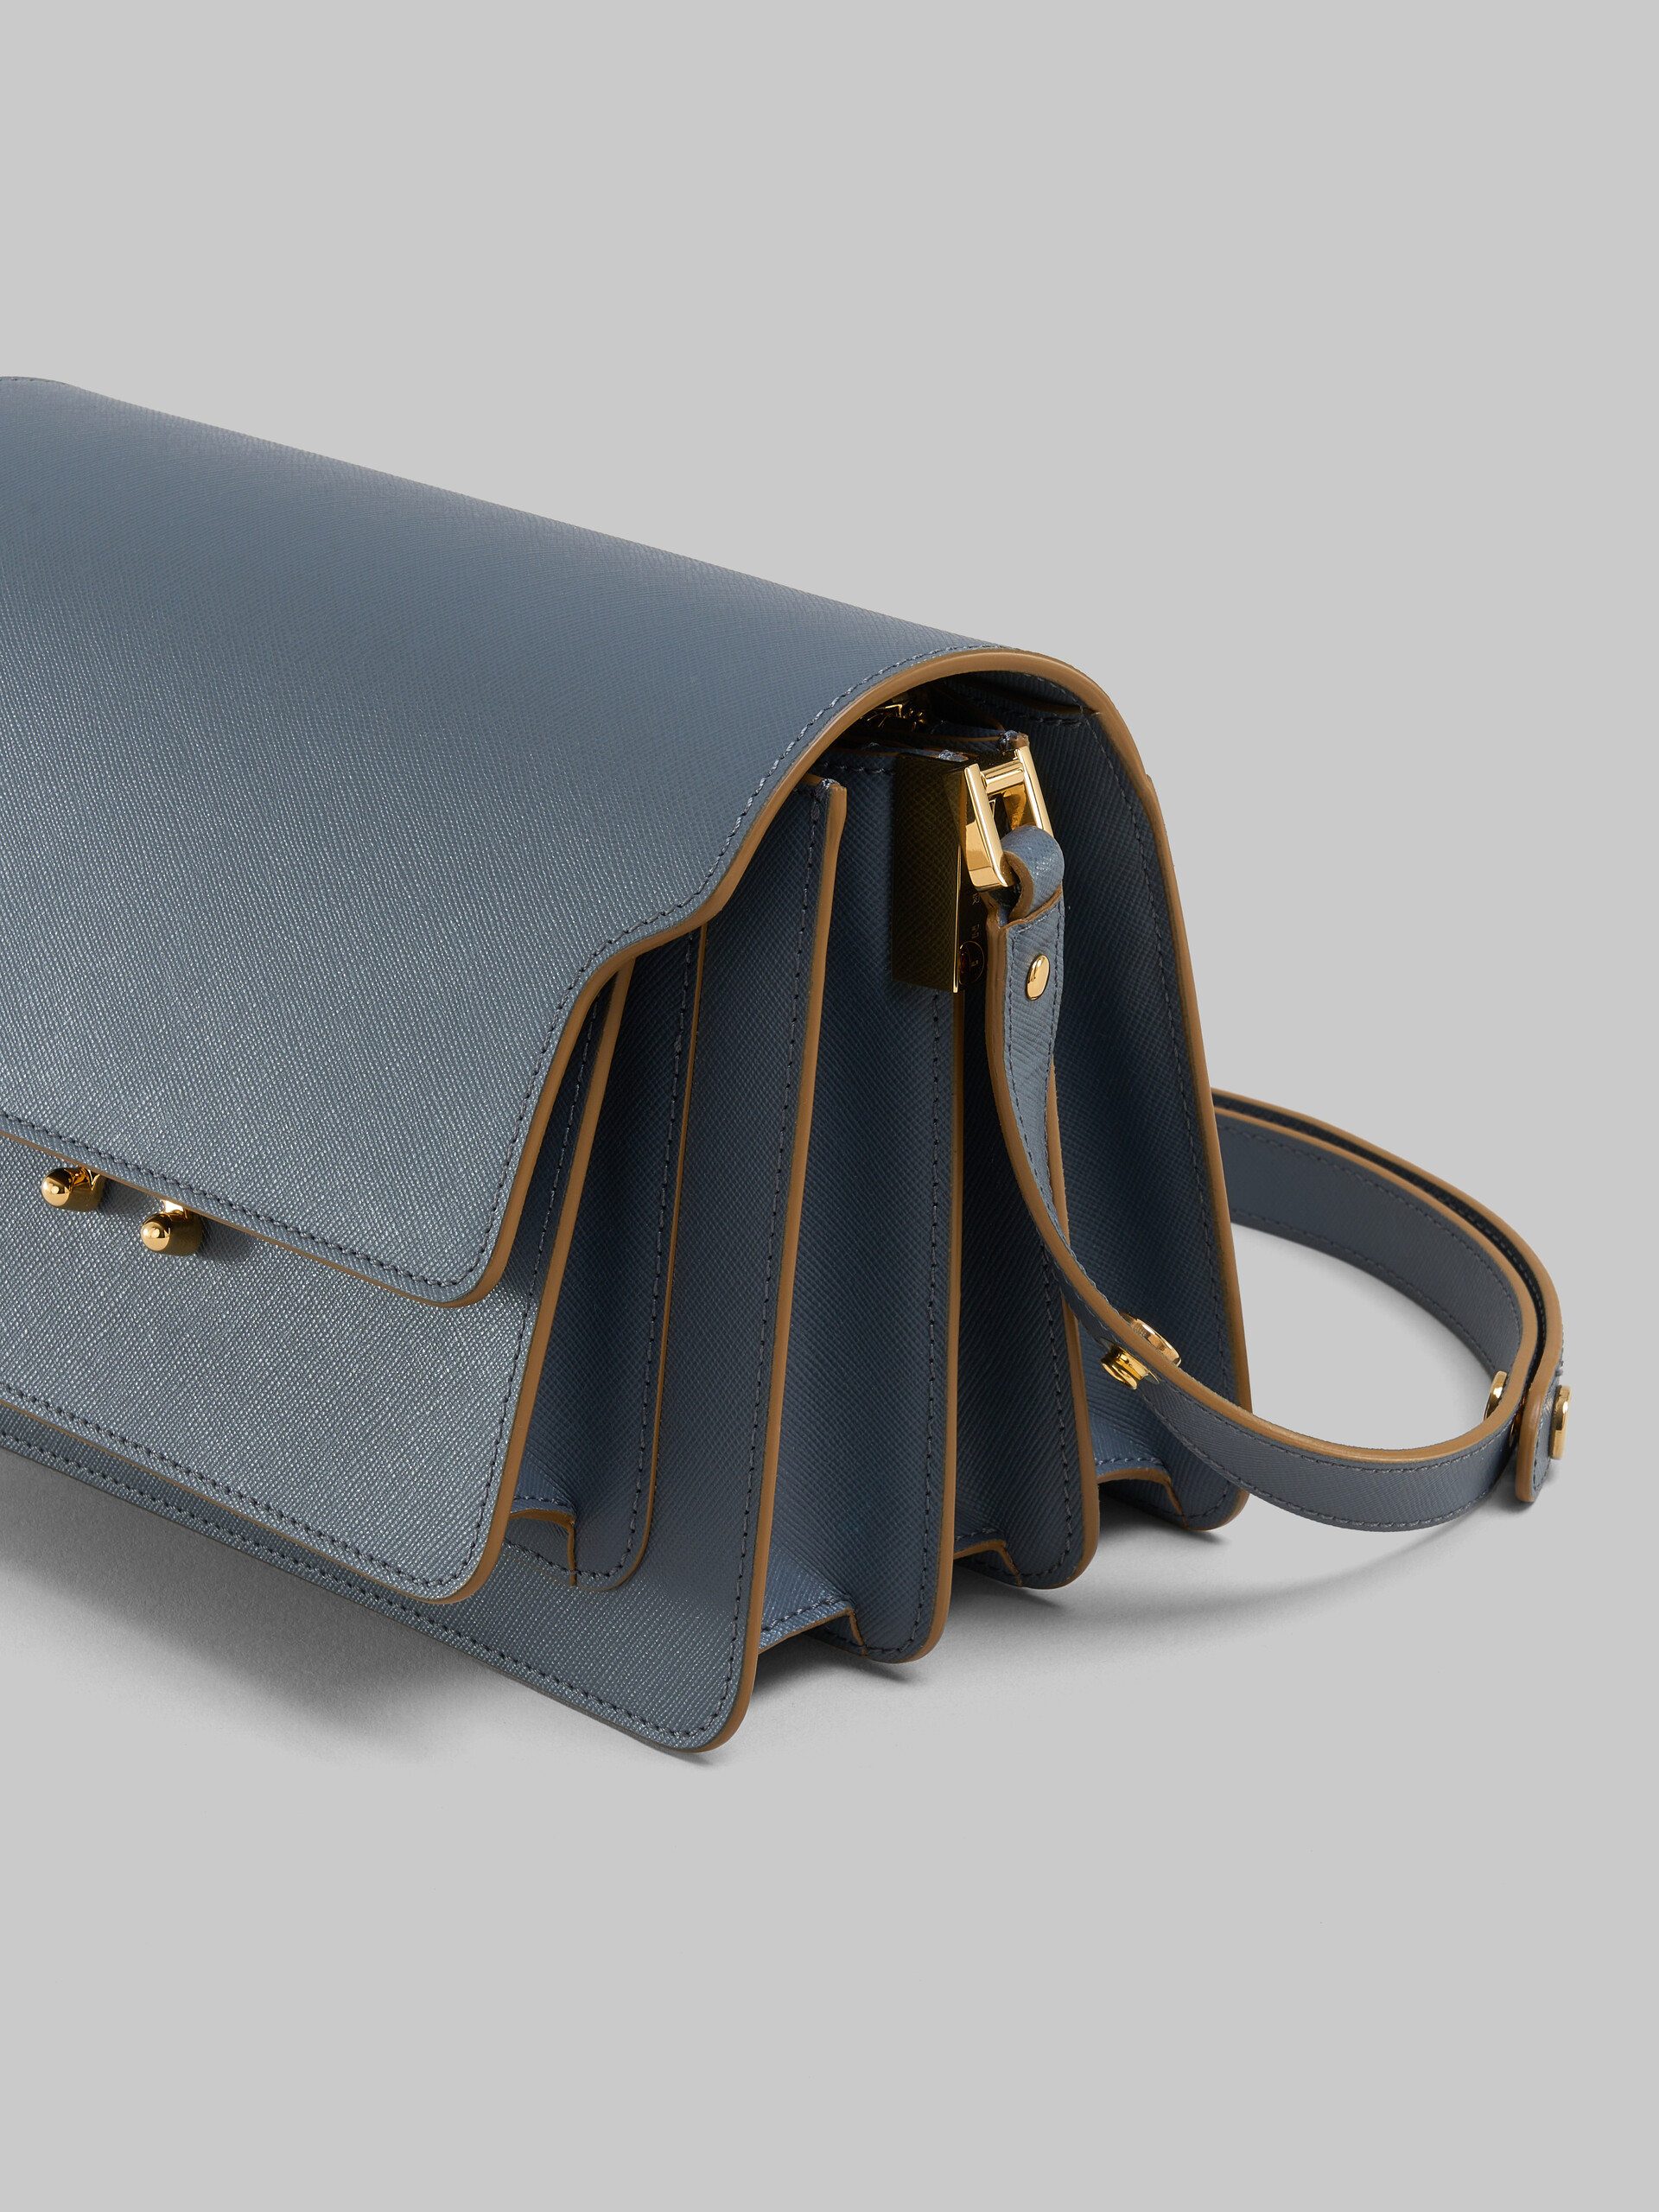 Beige saffiano leather medium Trunk bag - Shoulder Bag - Image 5